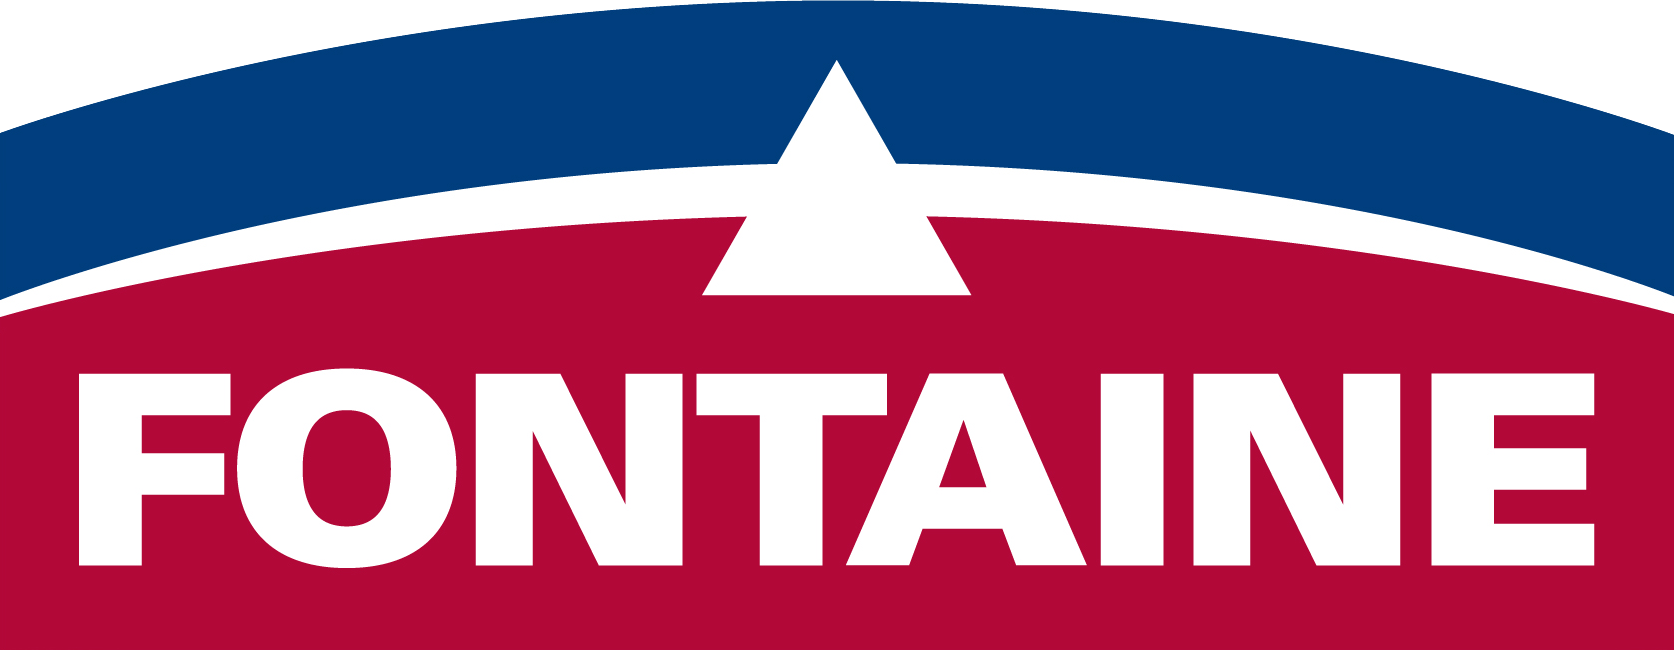 Fontaine logo